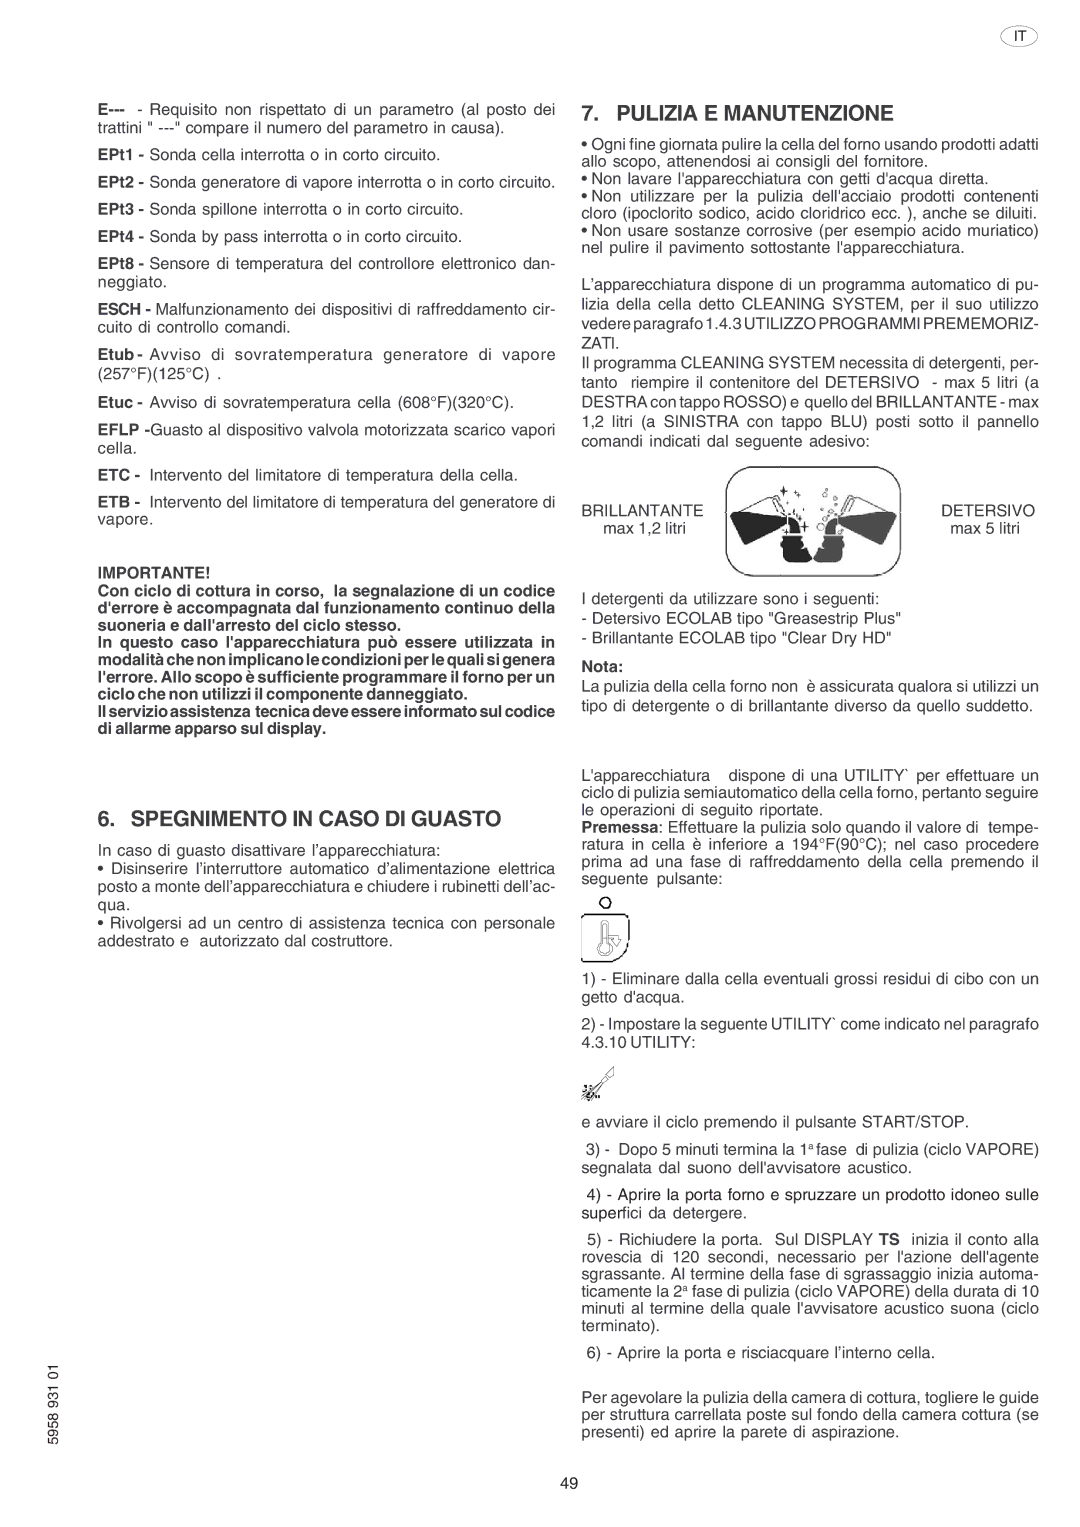 Electrolux ELECTRICS HEATED STEAM CONVECTION OVEN manual Spegnimento in Caso DI Guasto 